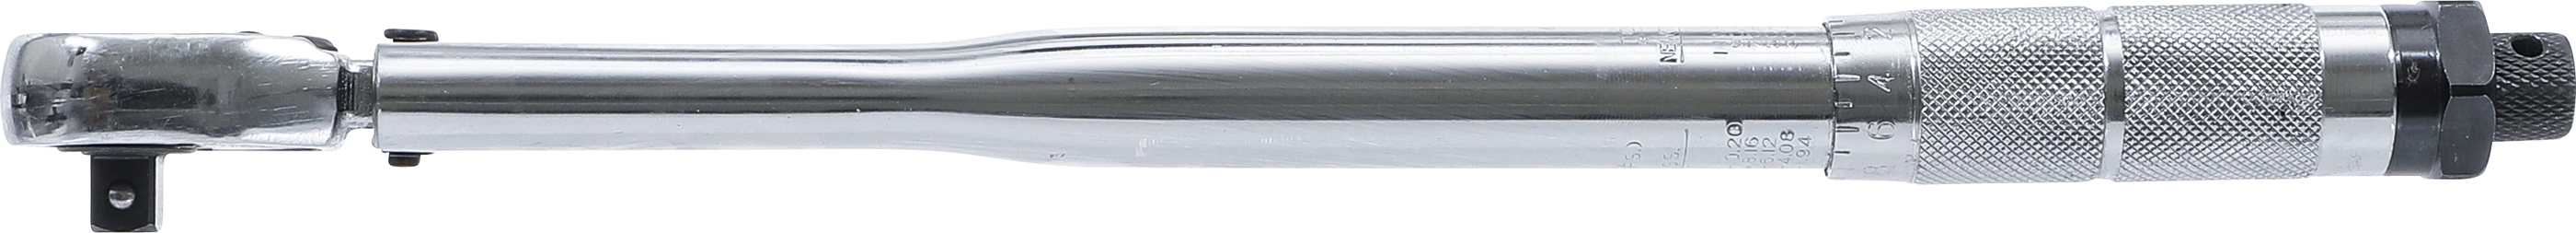 BGS Drehmomentschlüssel | Abtrieb Außenvierkant 10 mm (3/8") | 19 - 110 Nm